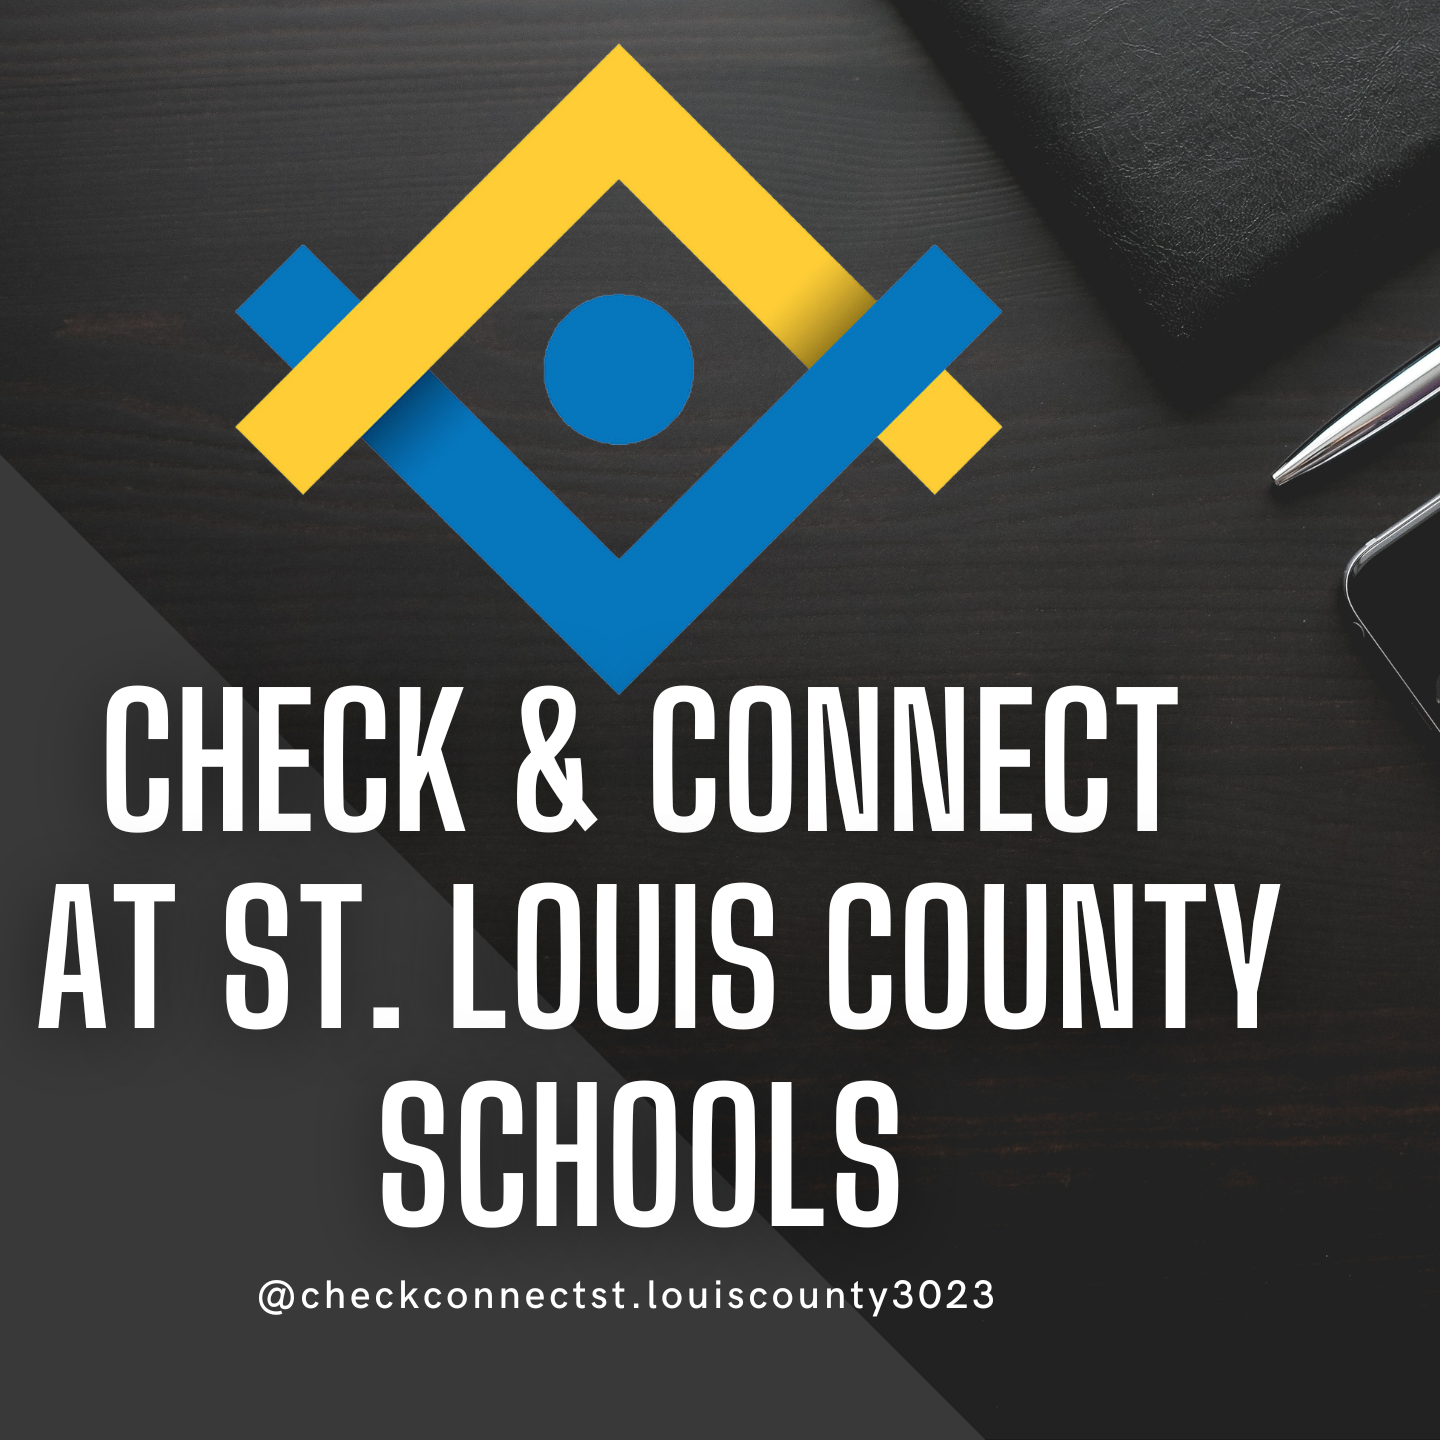 Check & Connect logo